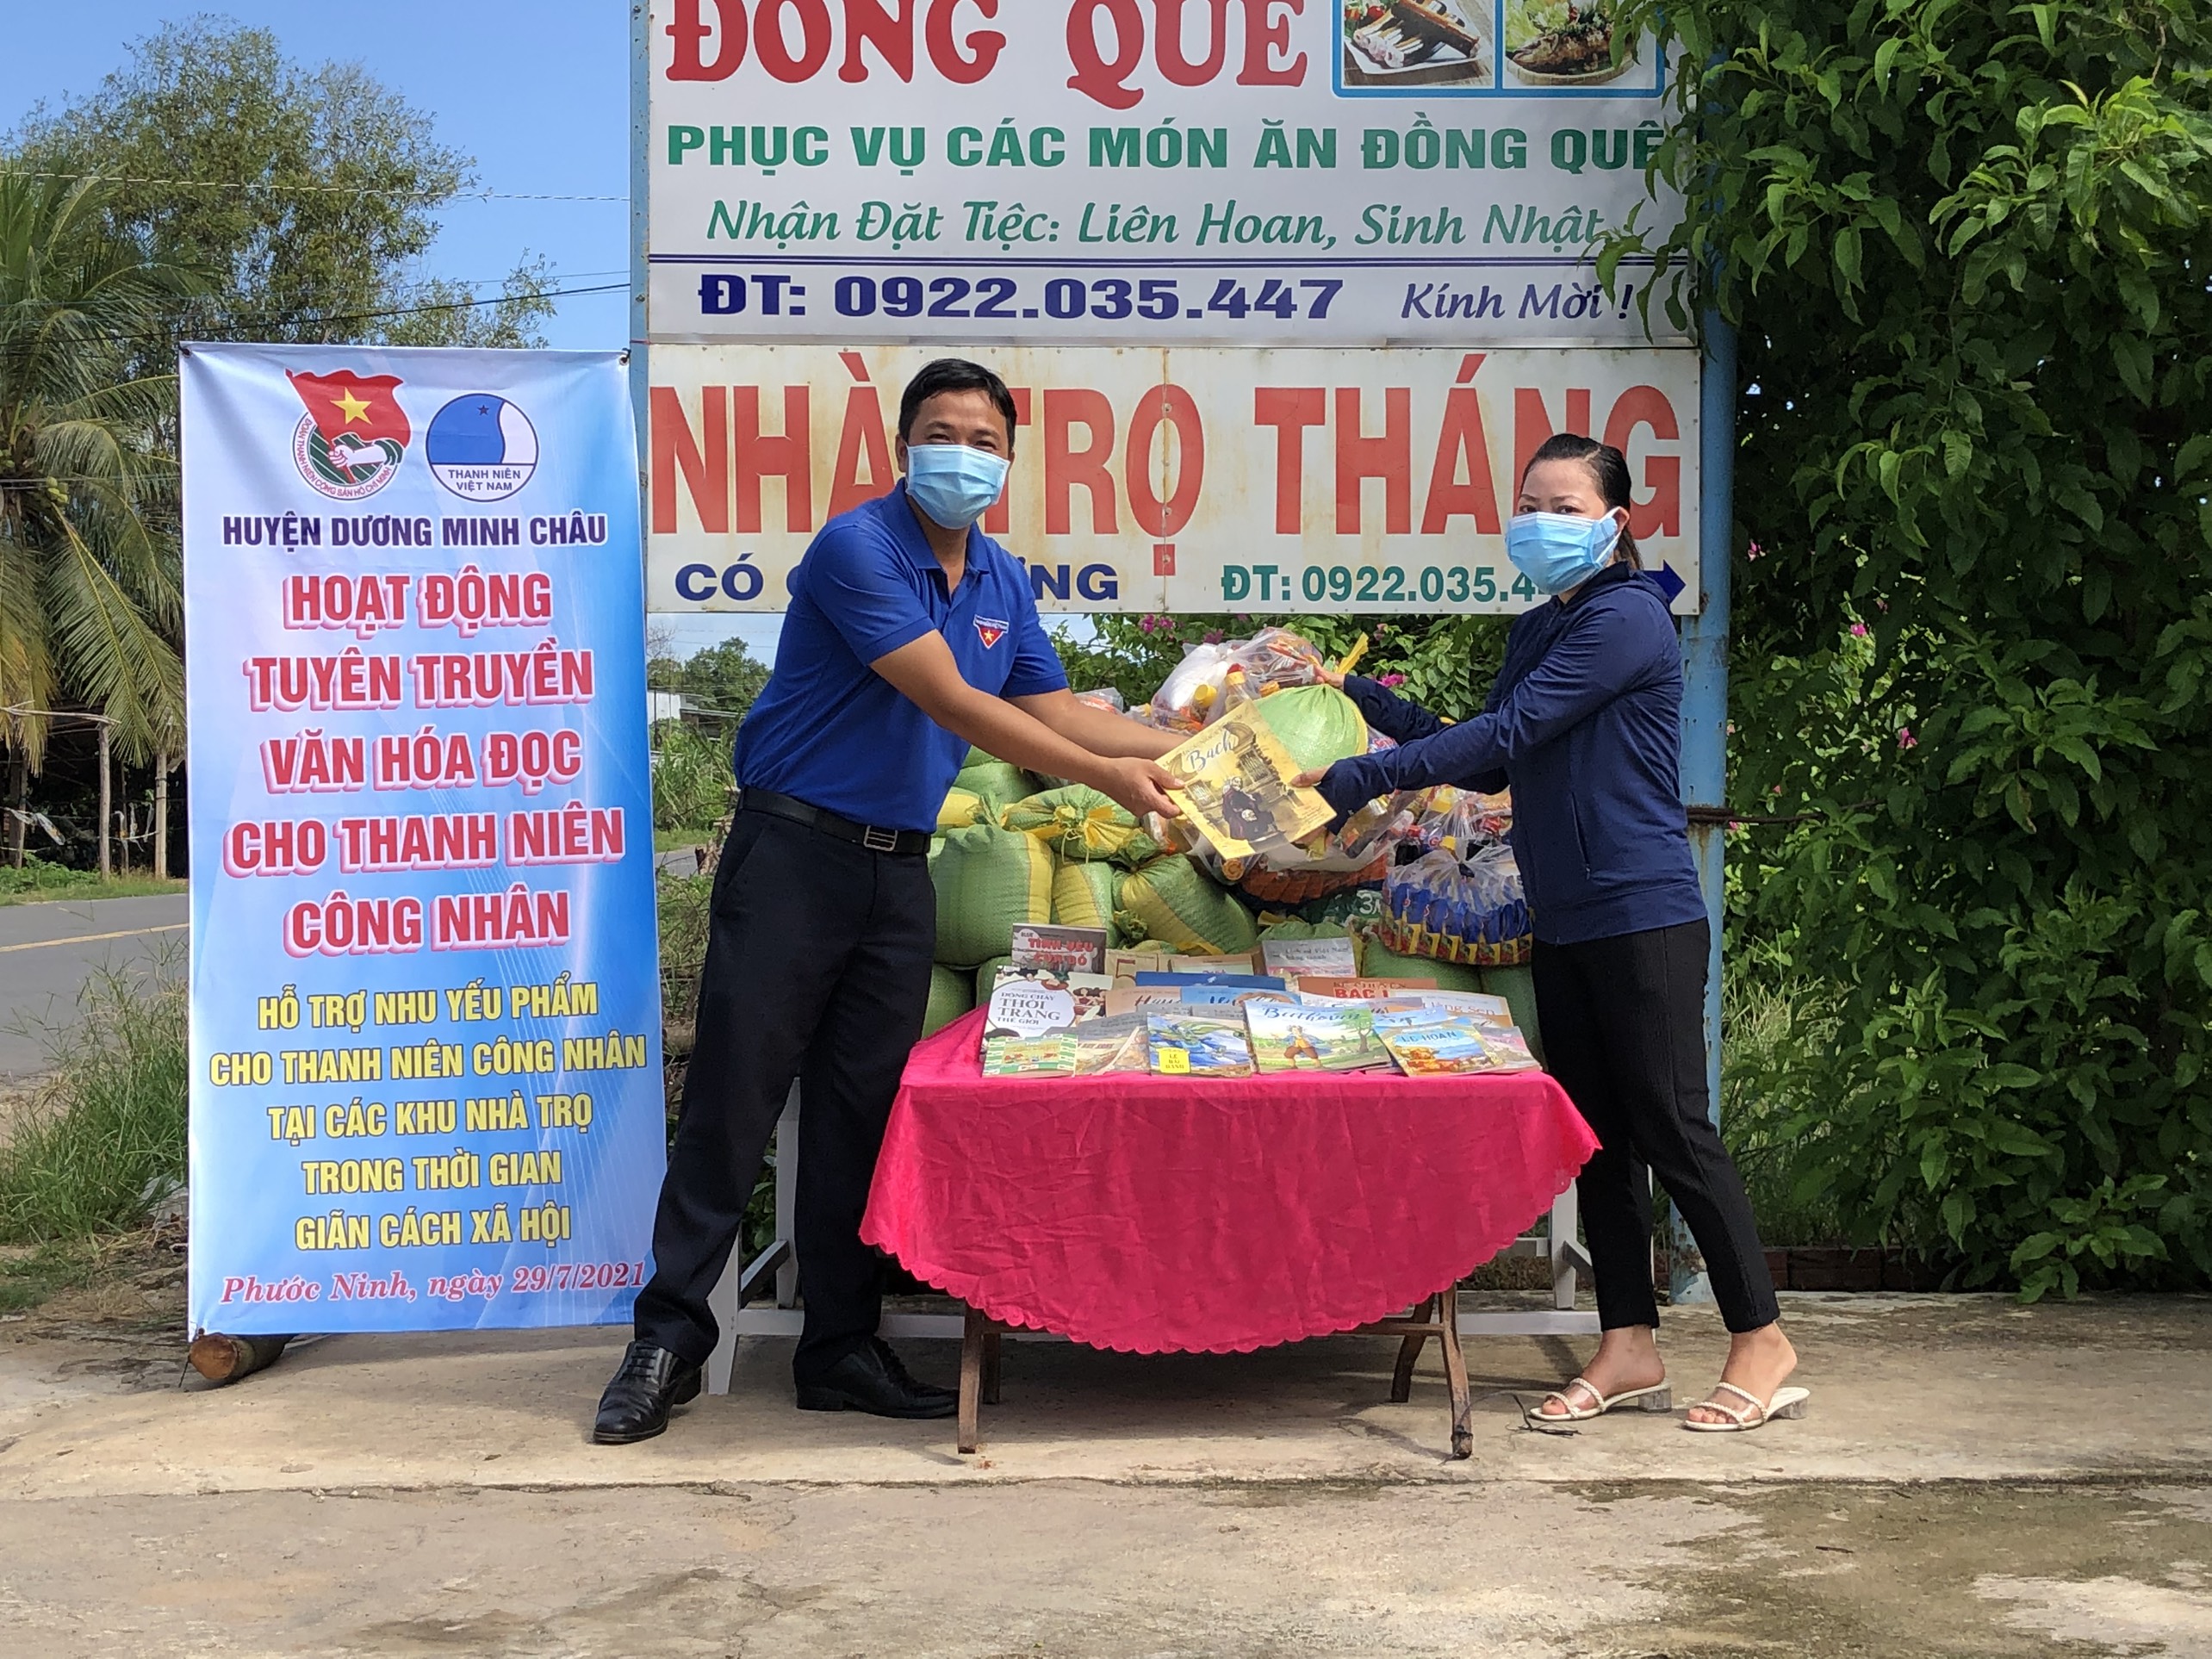 Huyện Dương Minh Châu Trao sách và nhu yếu phẩm cho thanh niên công nhân khu nhà trọ